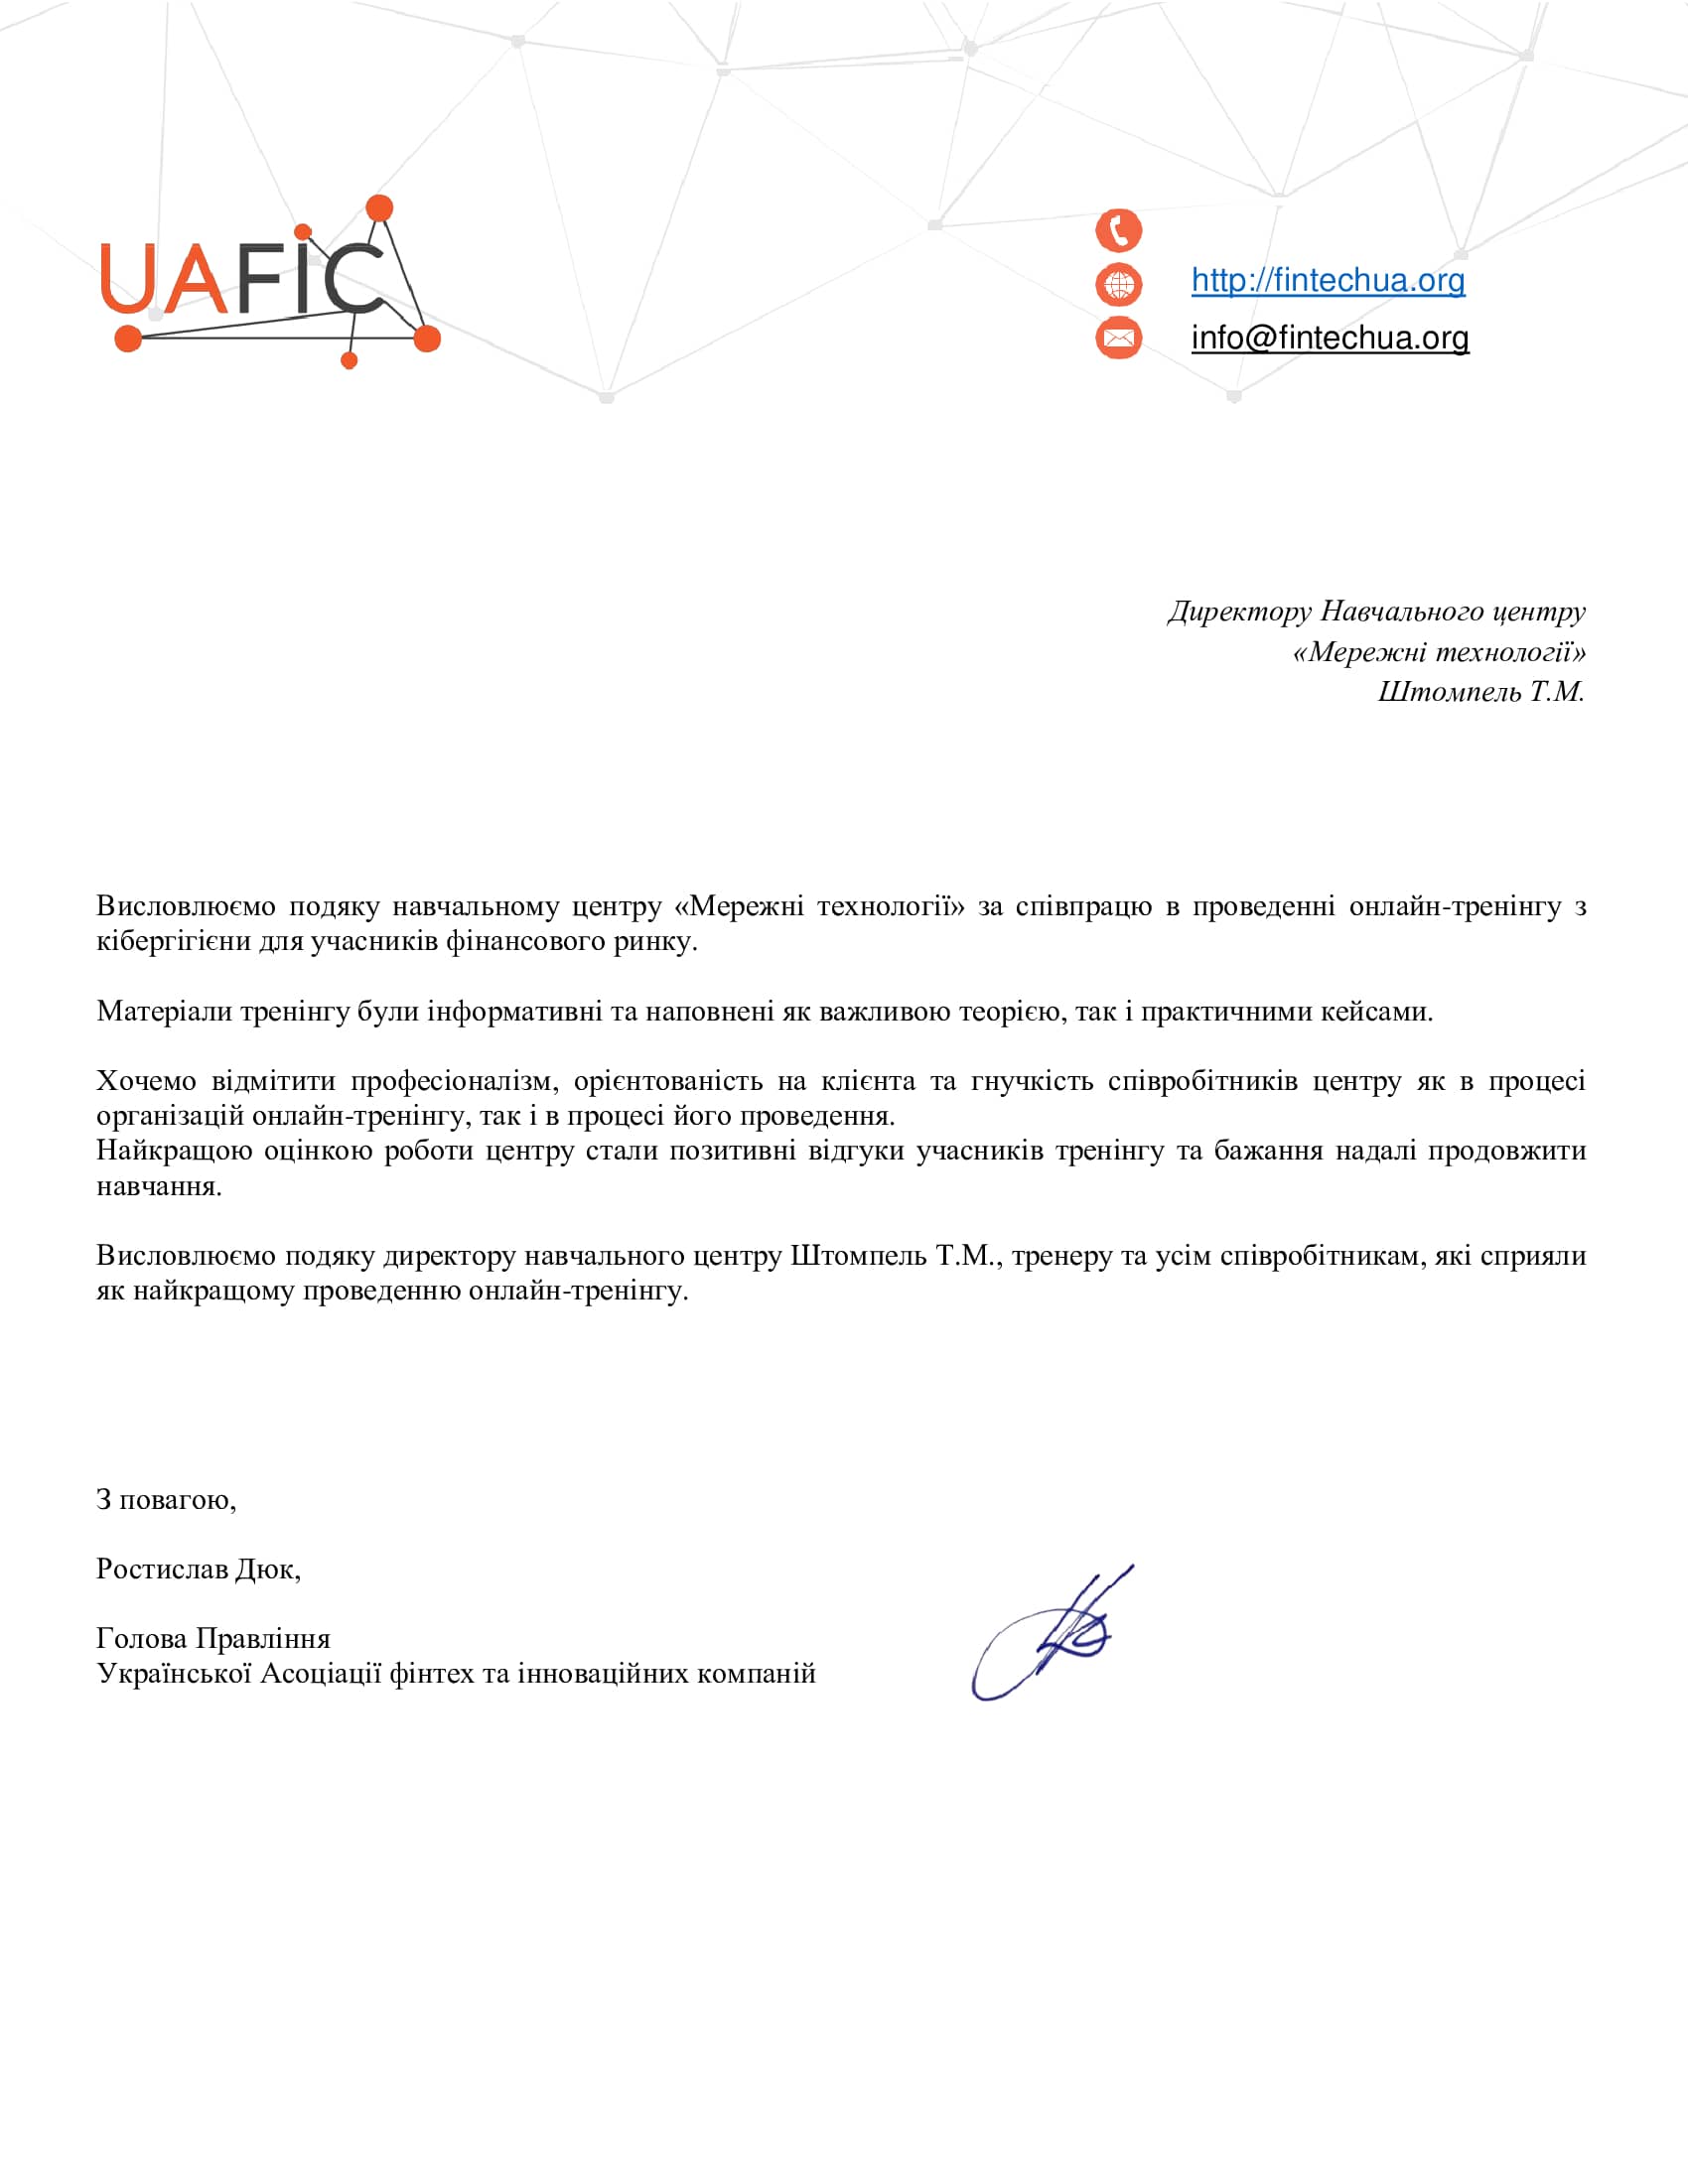 Відгук UAFIC - FinTech Ukraine про НЦ Мережні Технології